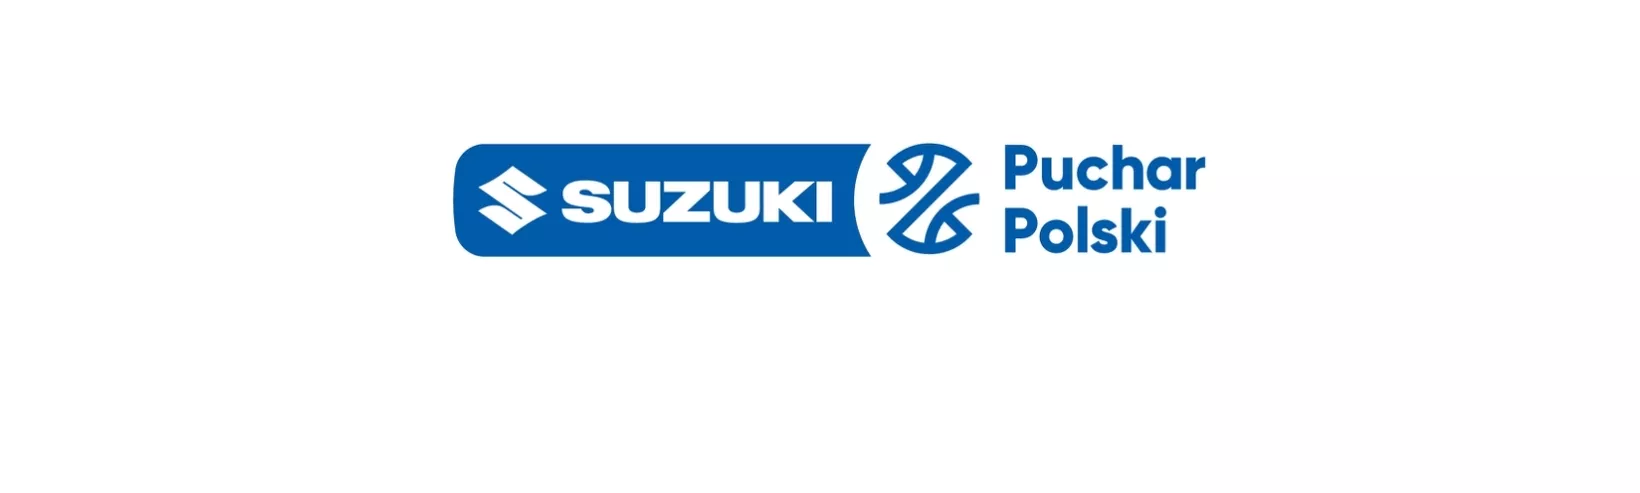 Suzuki Puchar Polski - ĆwierćfinałŚląsk Wrocław vs Spójnia StargardTYP ŁĄCZONY: Spójnia i powyżej 162.5 pkt w meczu